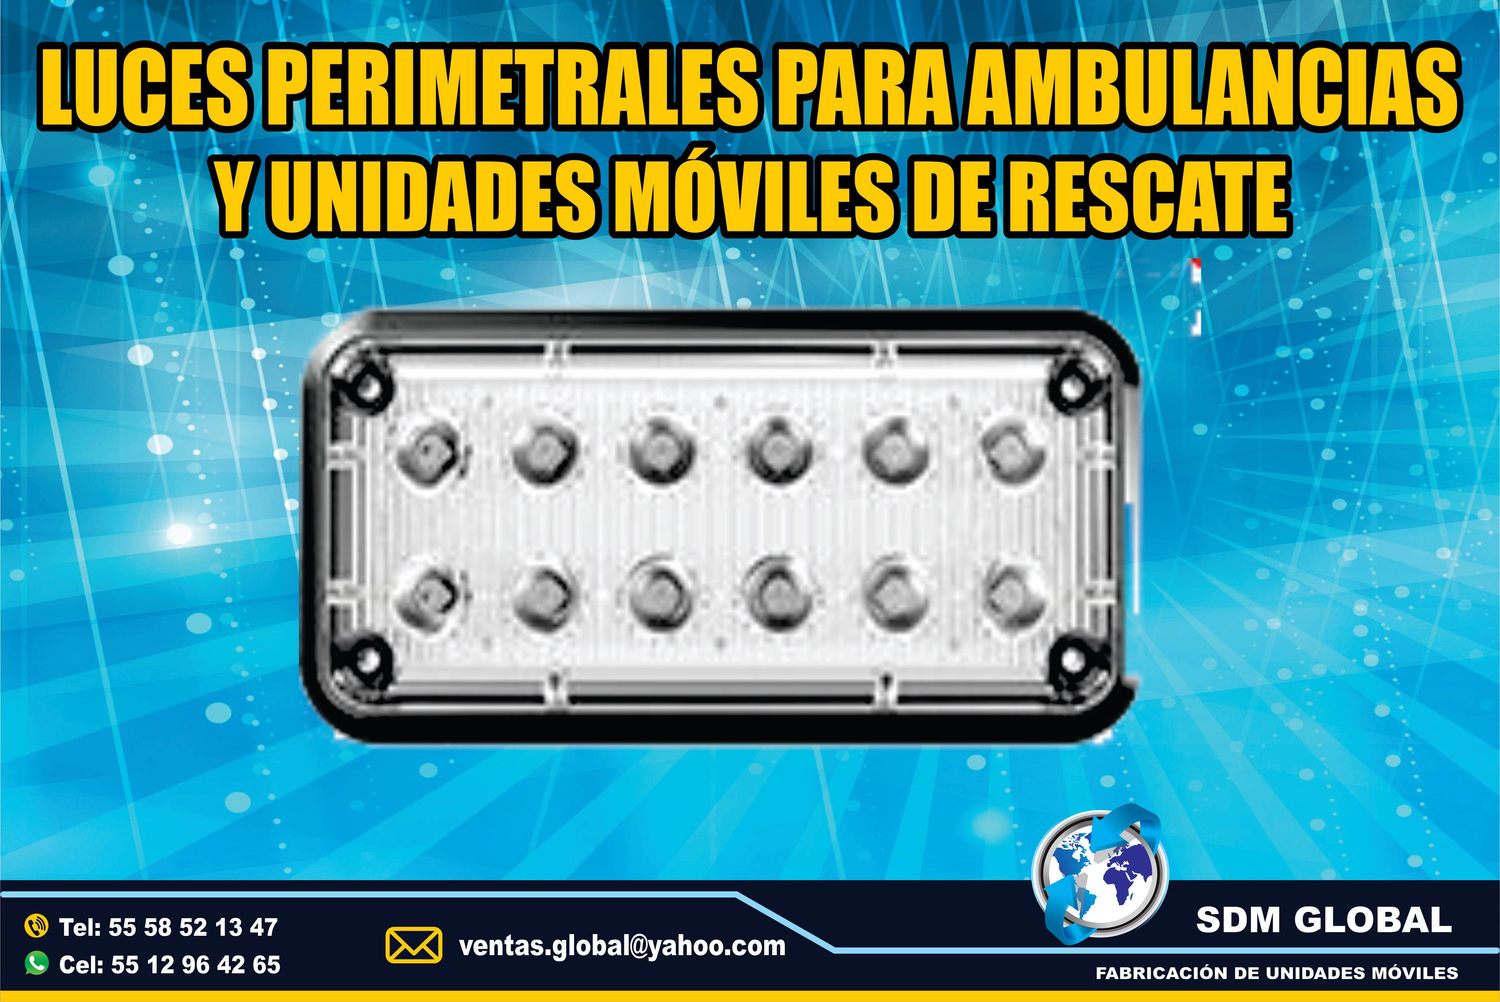 <span style="font-weight: bold;">Venta de Luces Perimetrales para Ambulancias de Traslado </span><br>